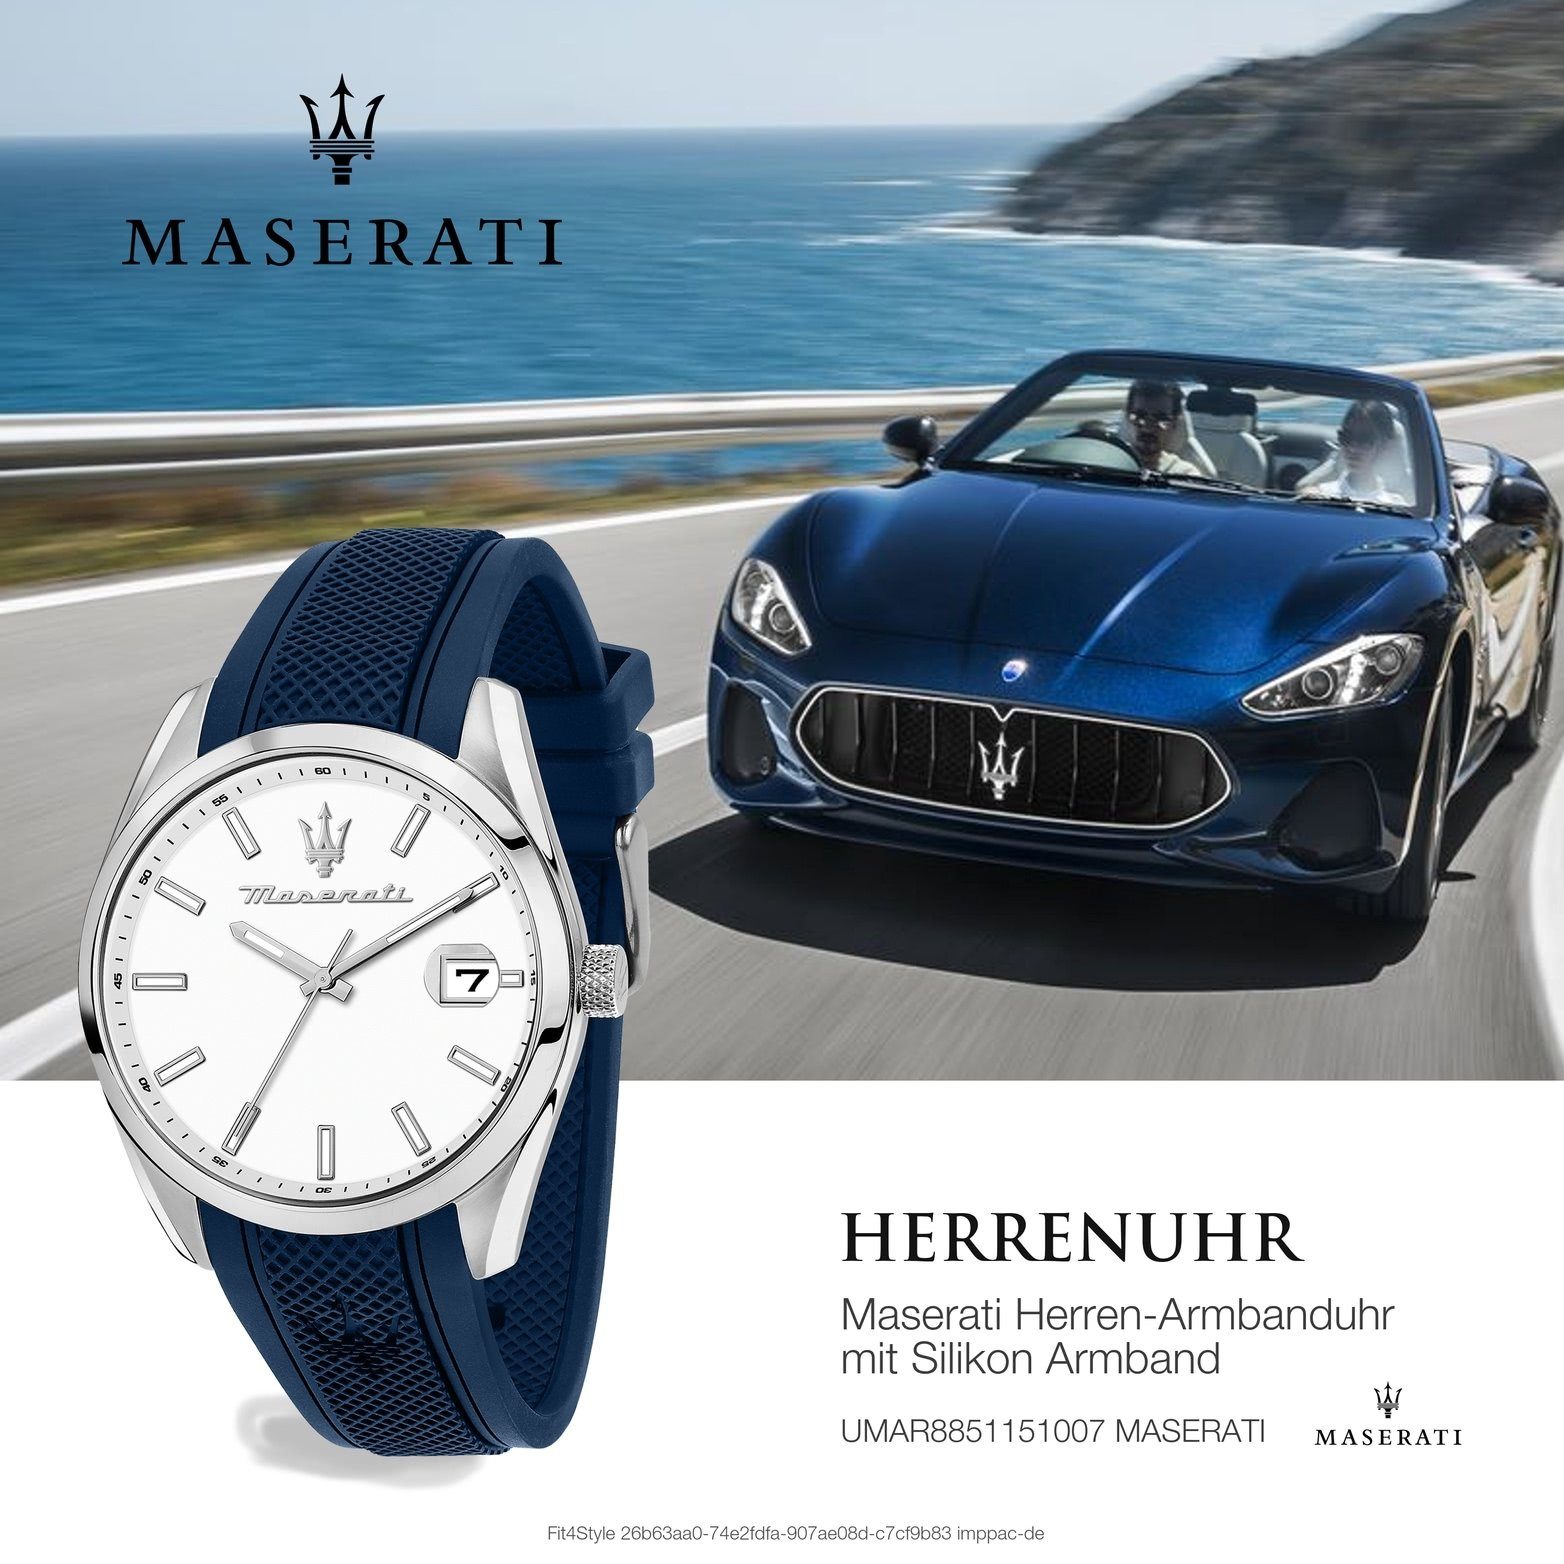 MASERATI Quarzuhr Maserati Herrenduhr Herrenuhr Silikonarmband, (ca. Attrazione, 43mm) weiß Gehäuse, groß rundes